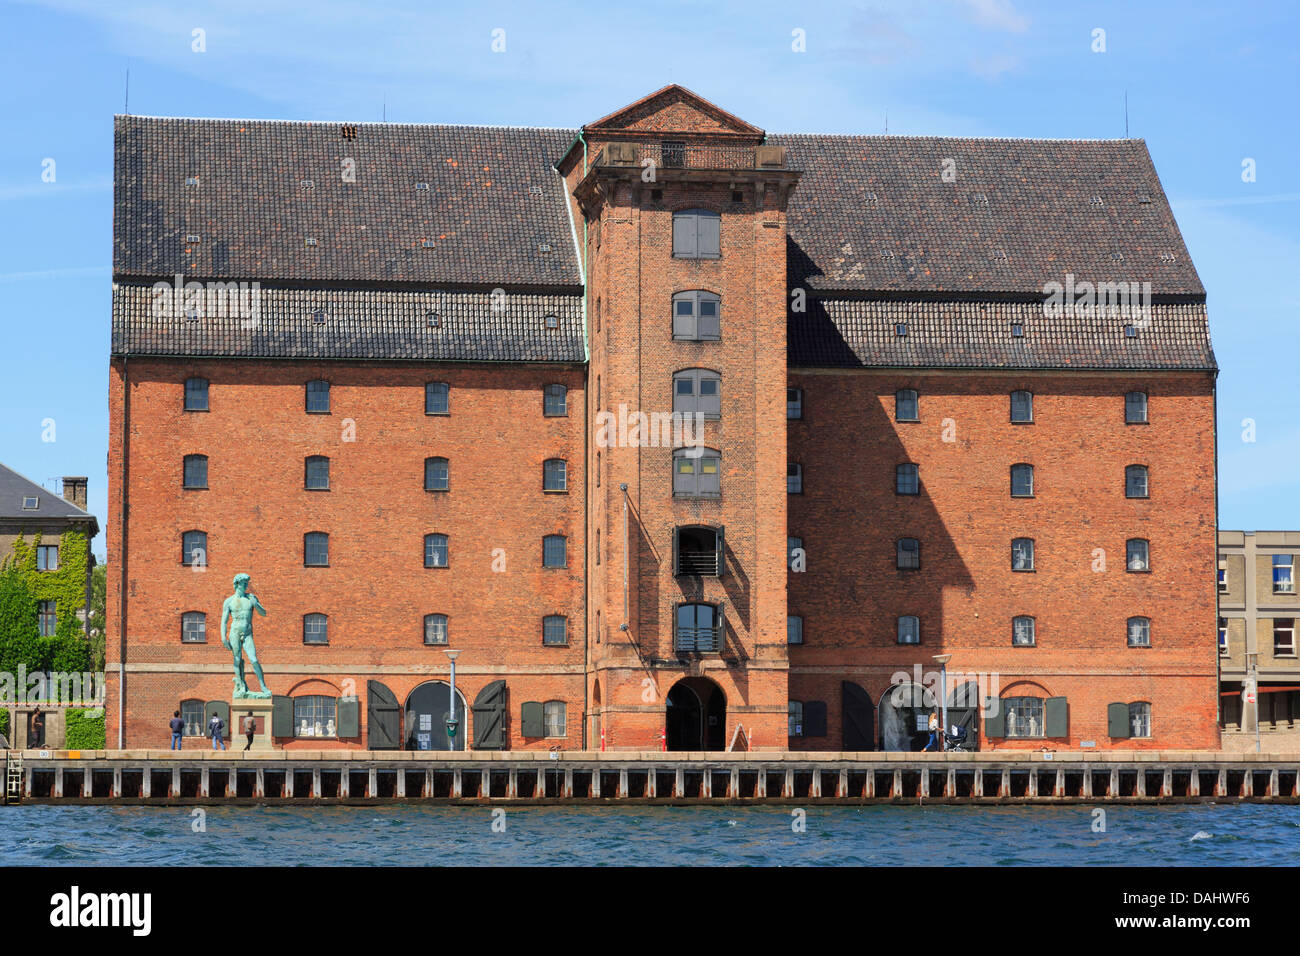 En s'appuyant sur la collection Royal Harbour waterfront est une succursale de Statens Museum for Kunst de Copenhague, Danemark, Nouvelle-Zélande Banque D'Images